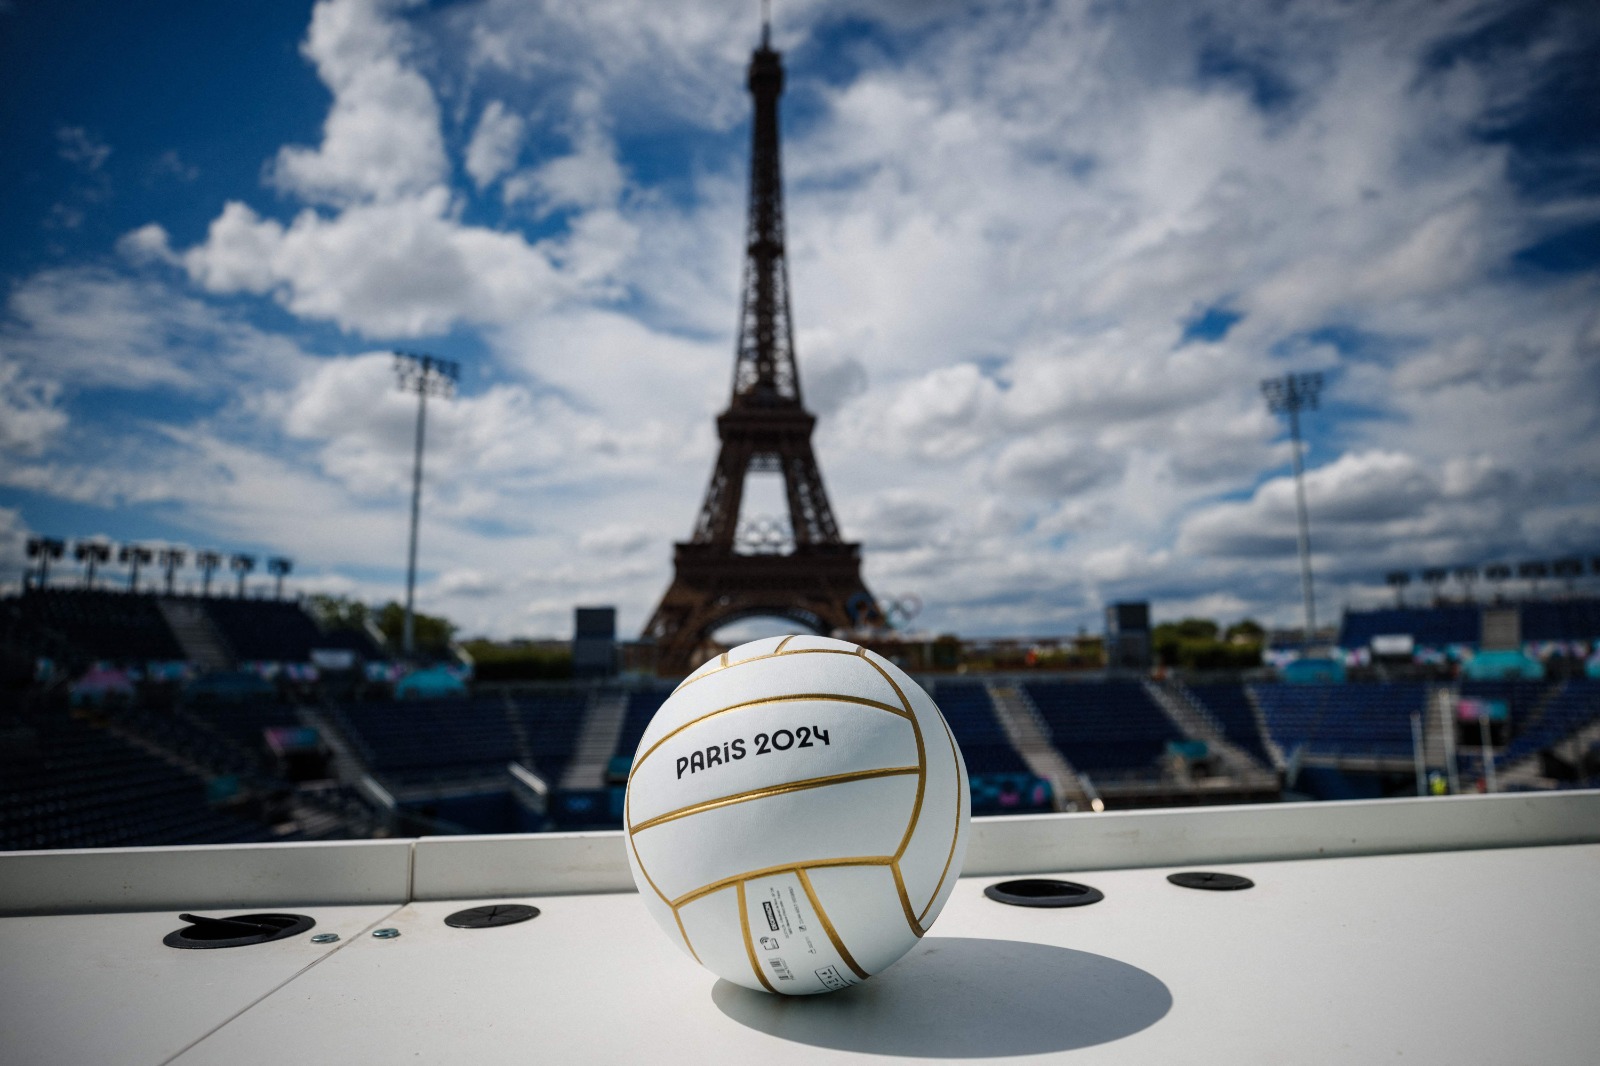 Vista da Eiffel Tower Stadium, arena do vôlei de praia em Paris 2024